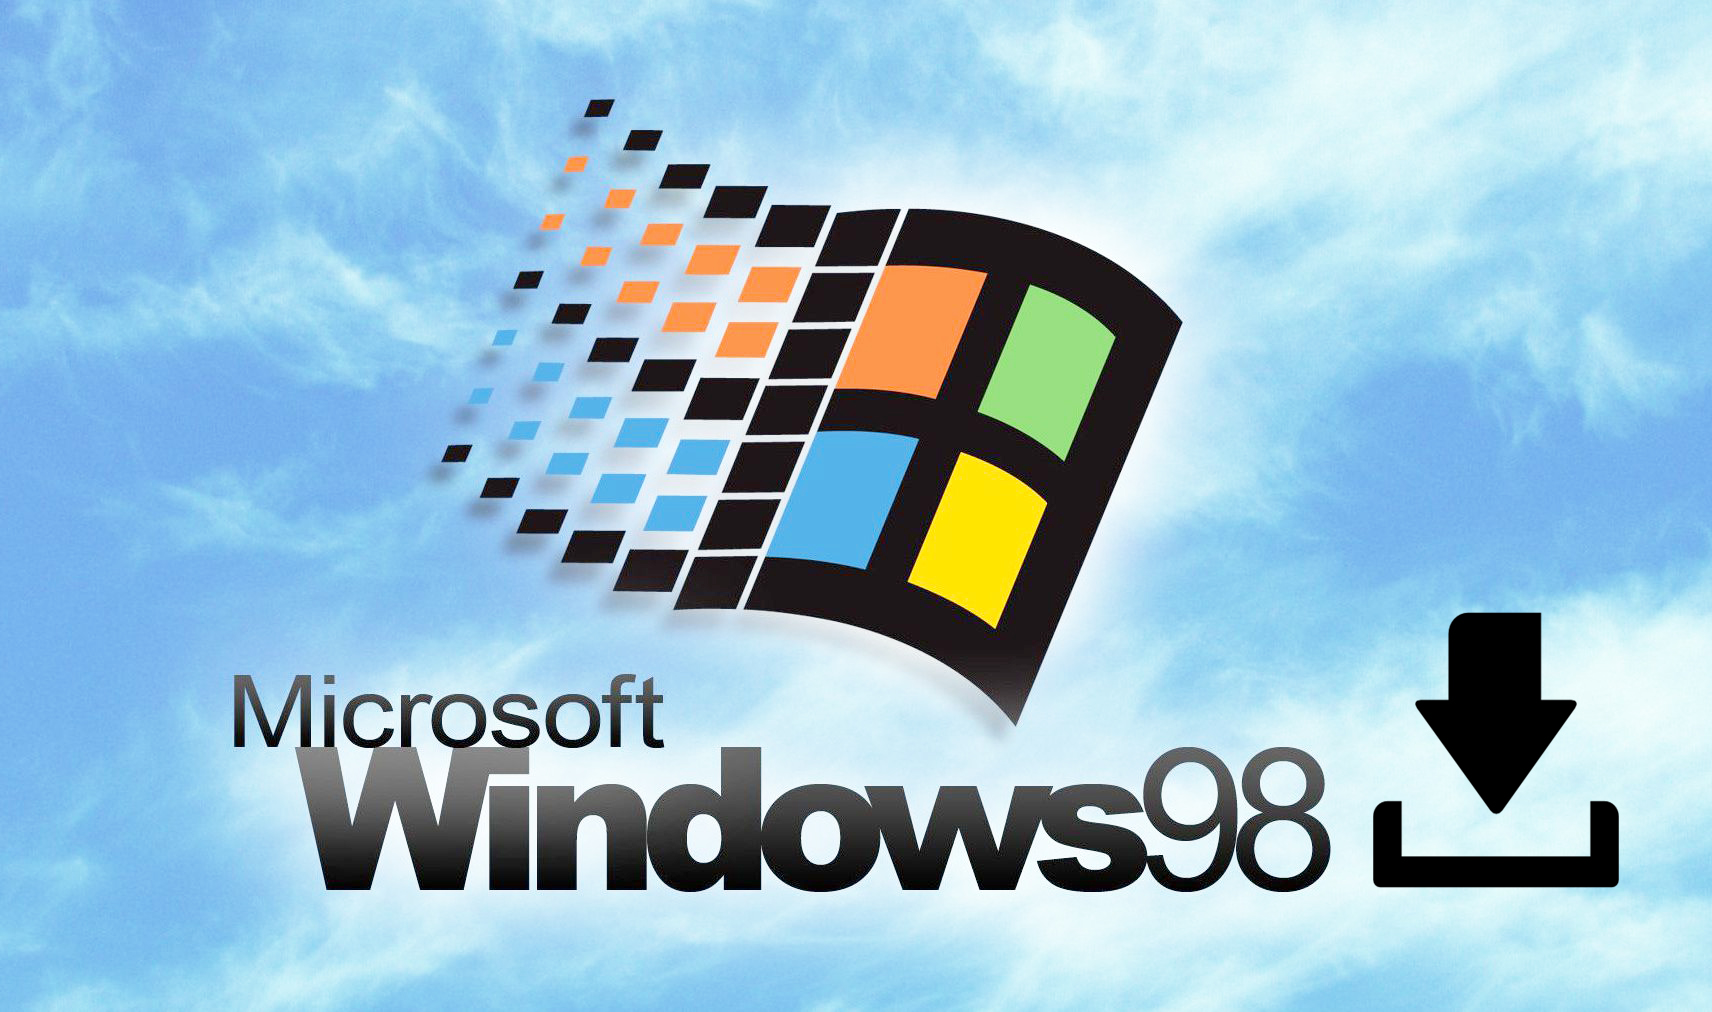 Download Windows 98 Complete Setup